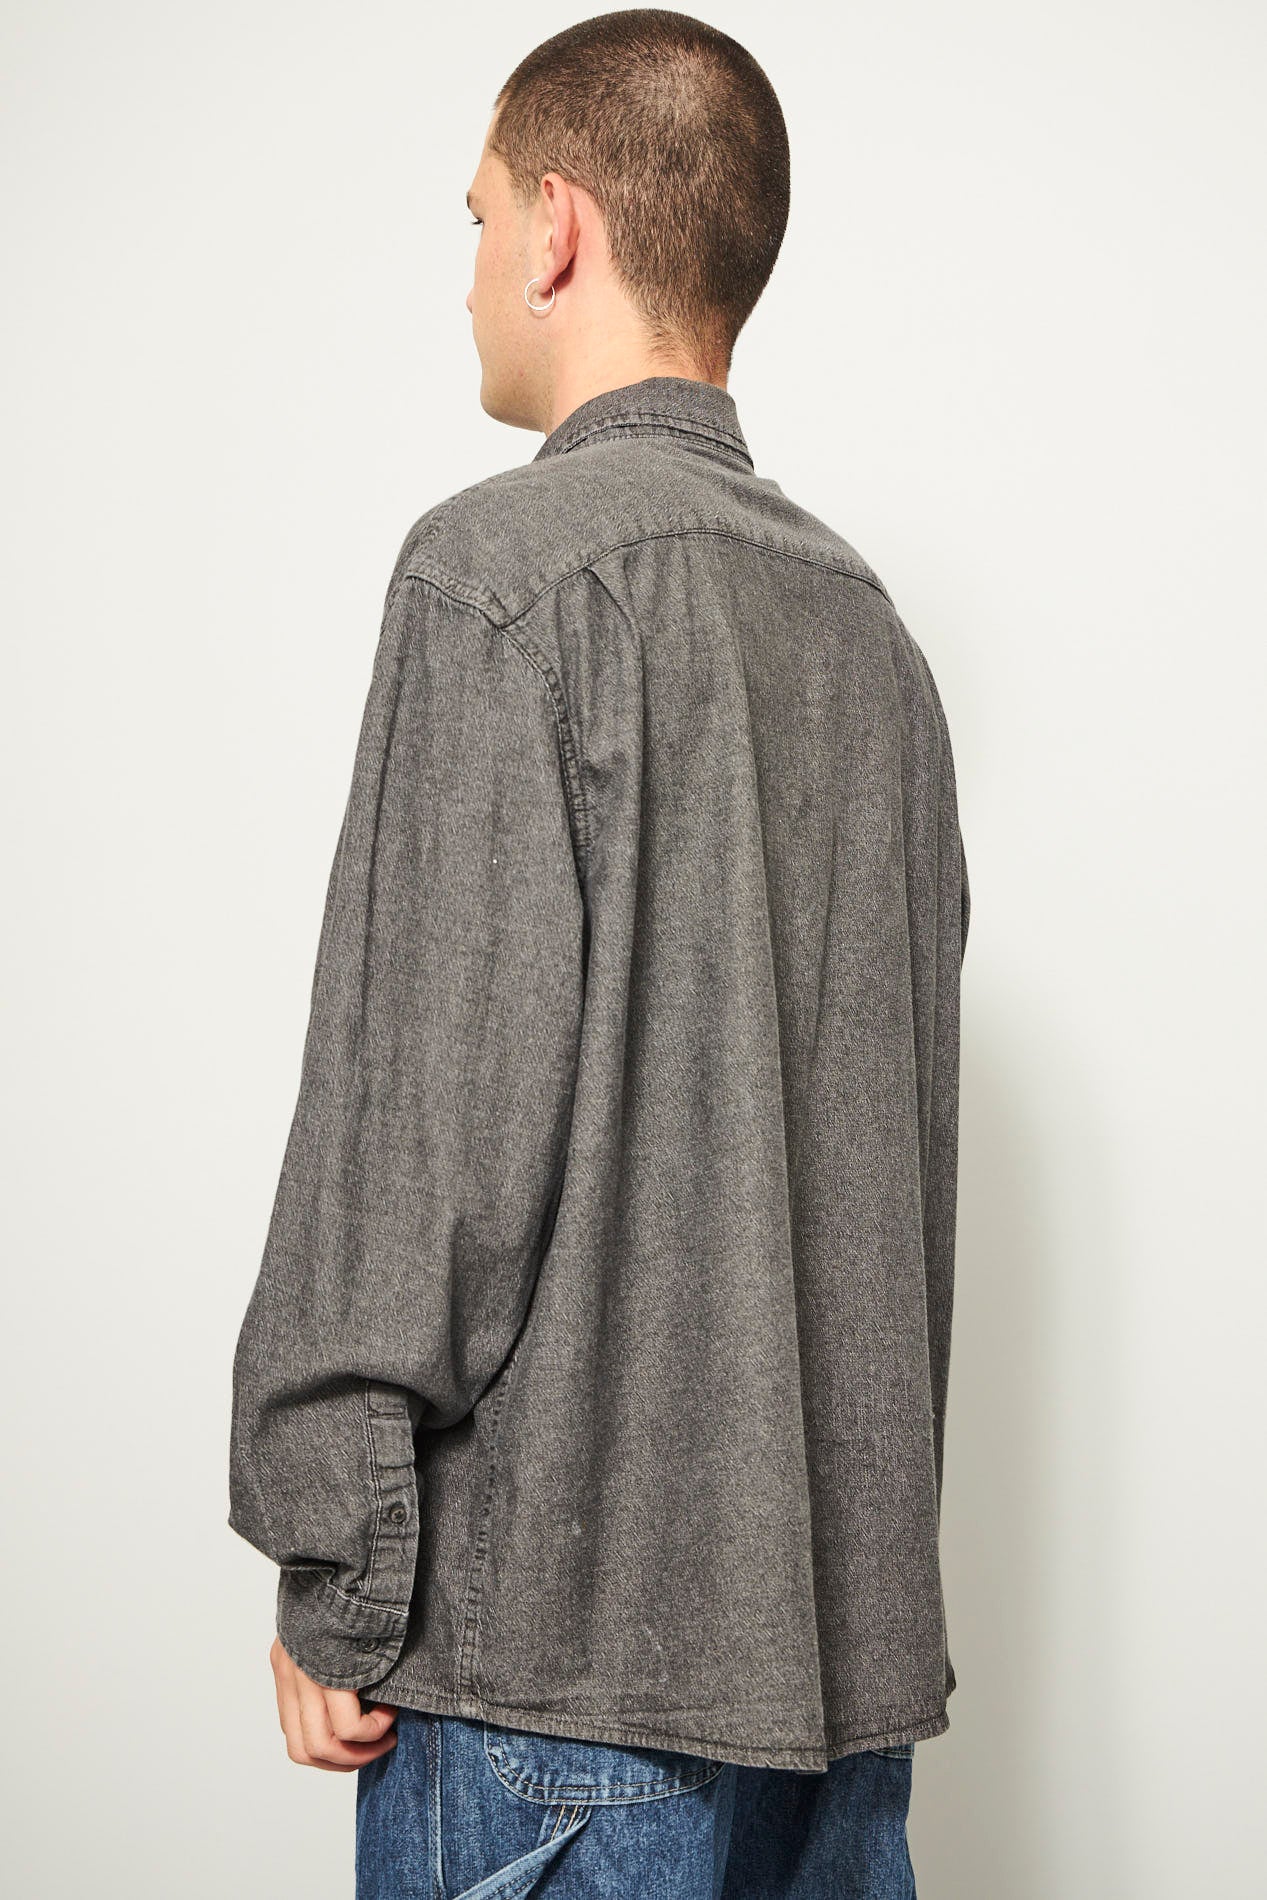 Camisa casual  gris wrangler talla Xl 343